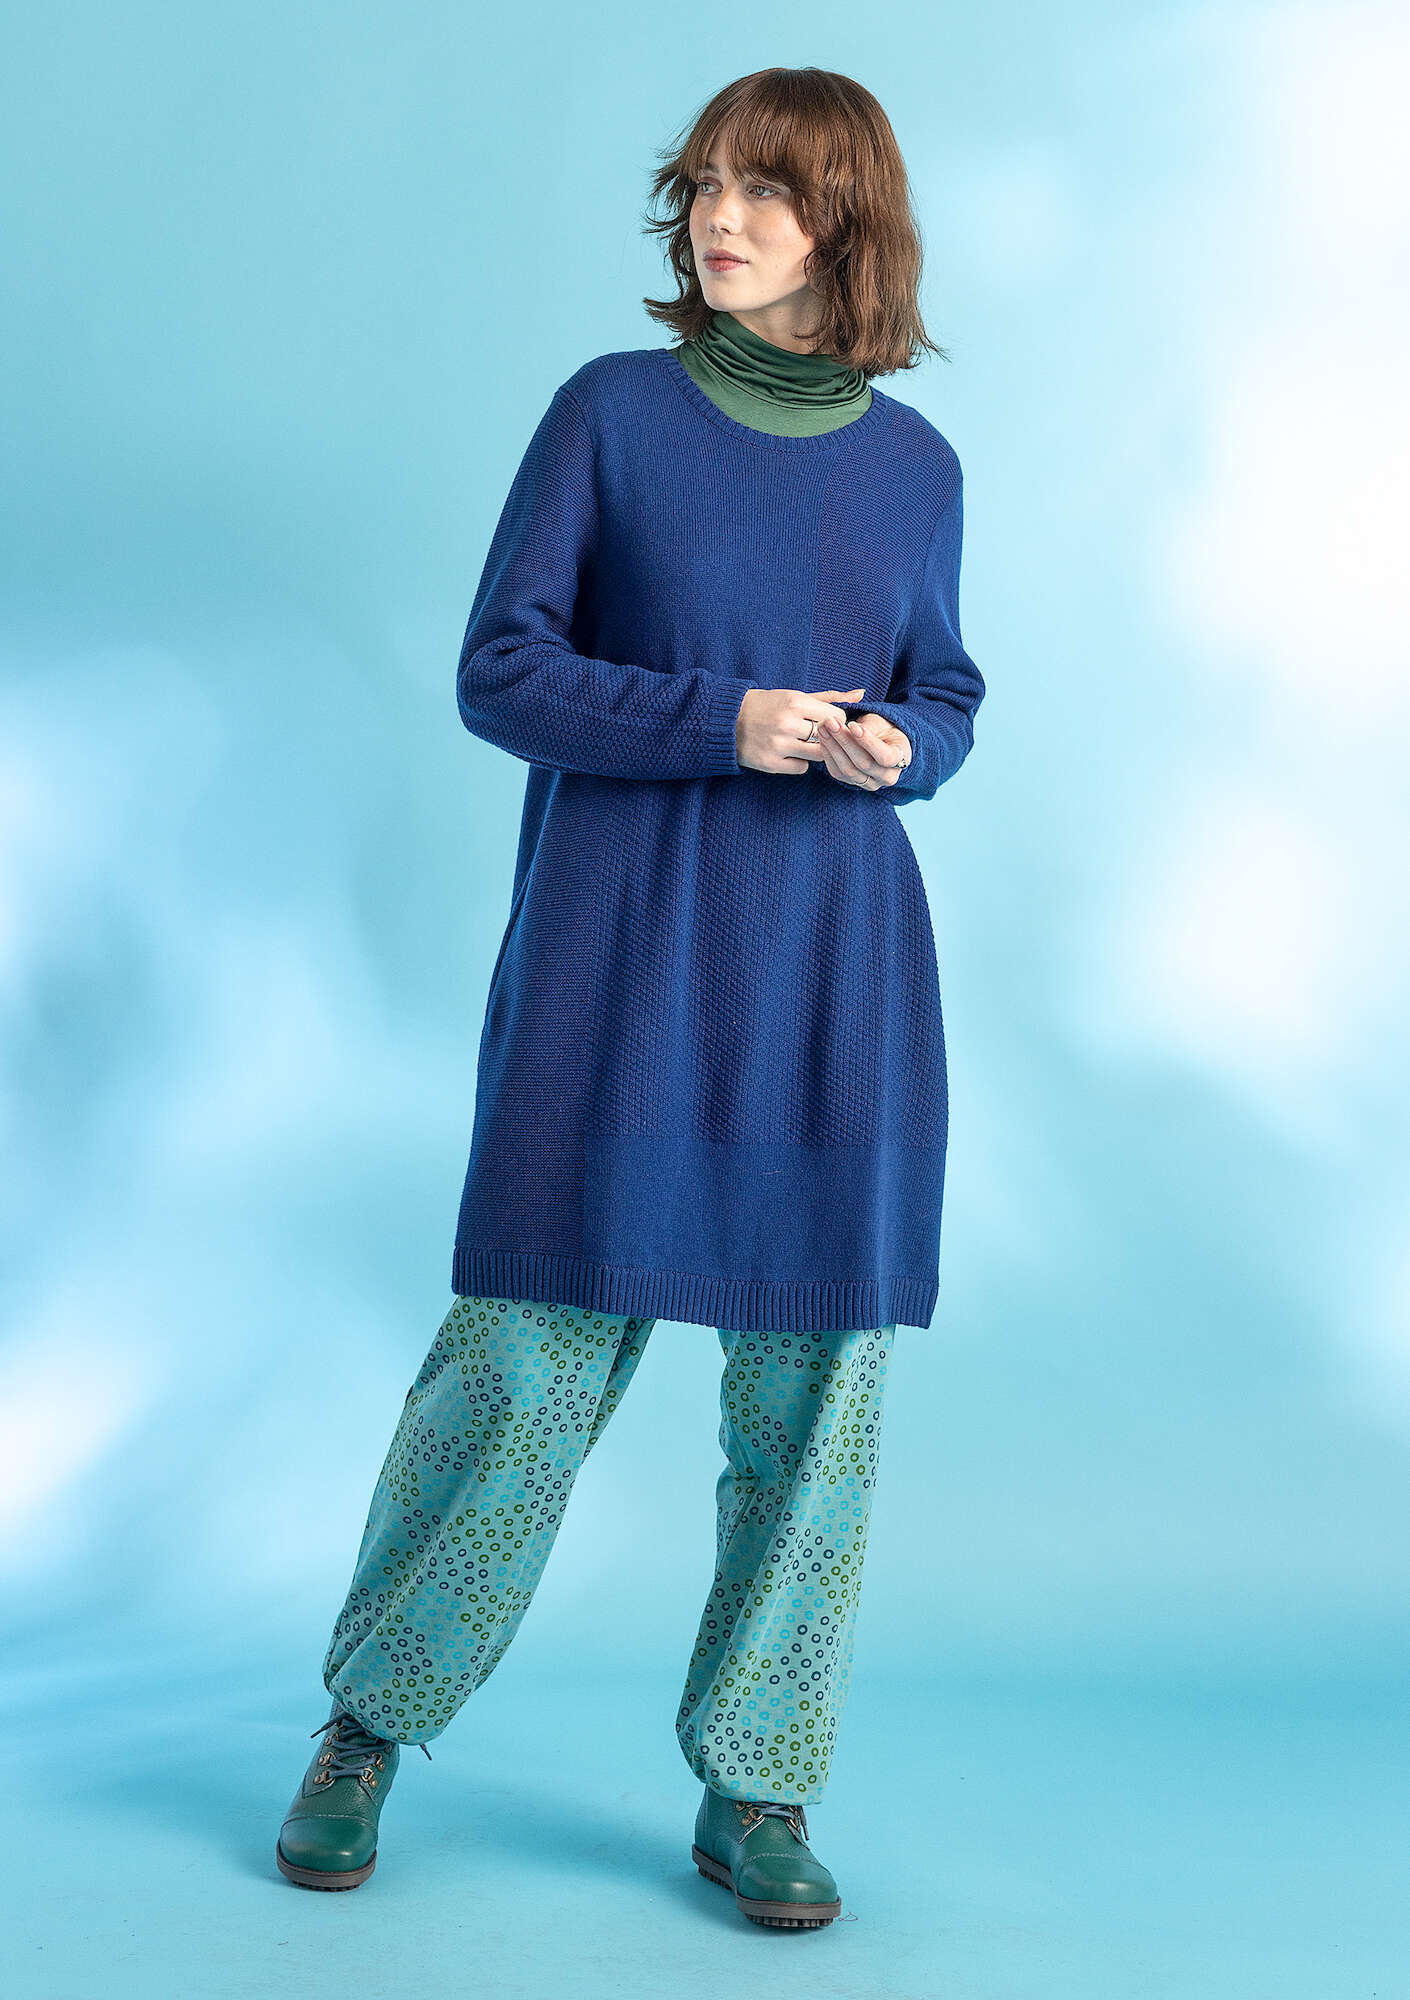 Wool/cotton knit tunic indigo blue